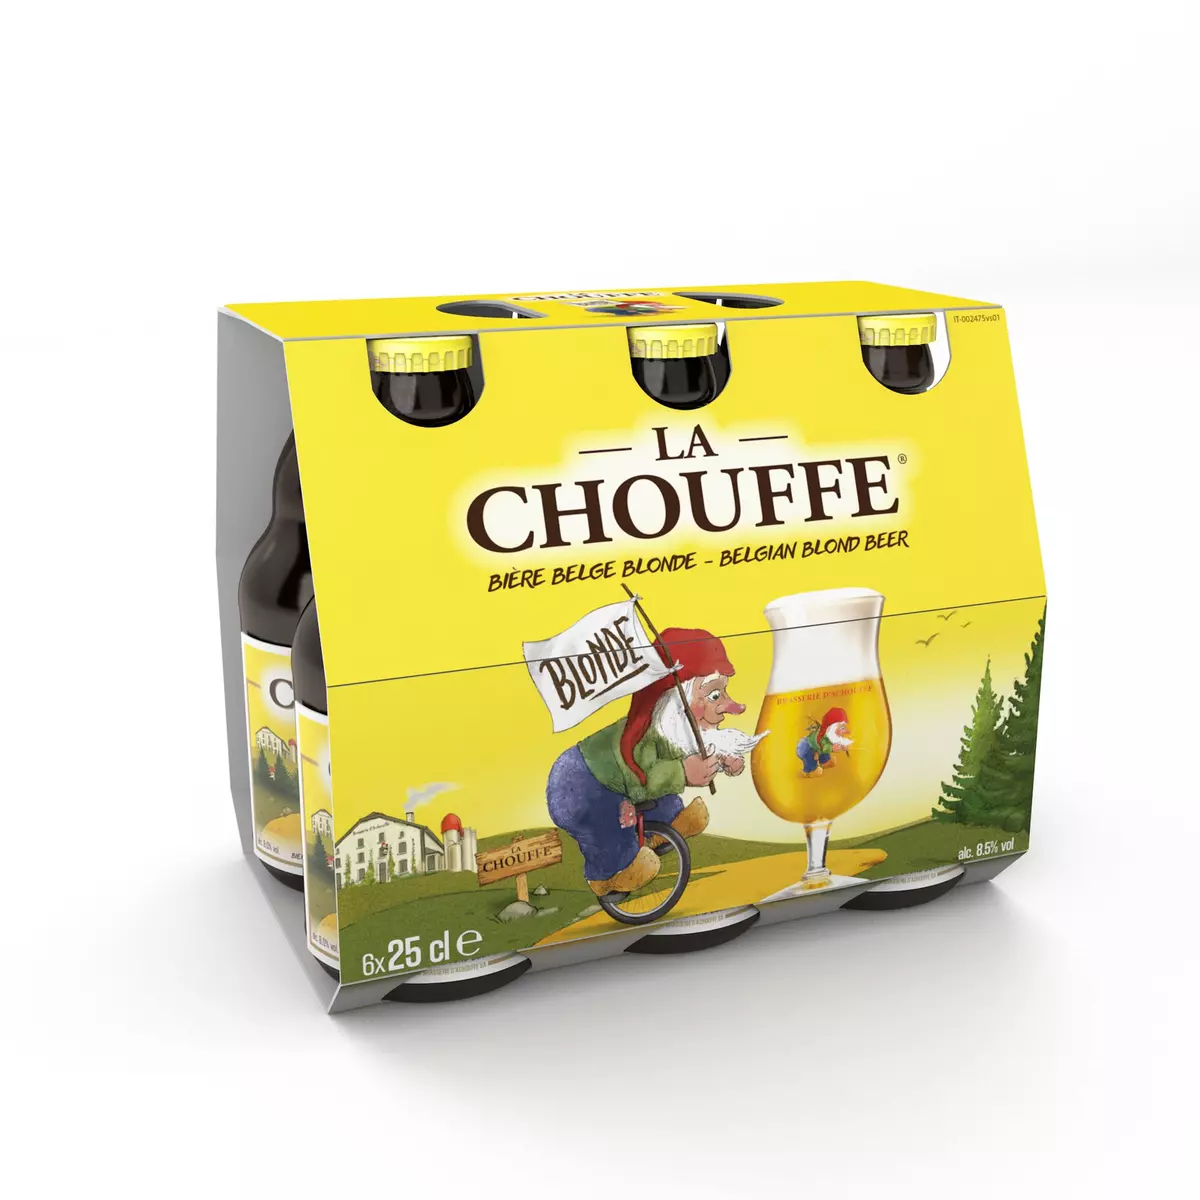 LA CHOUFFE Bière blonde belge 8% bouteilles 6x25cl